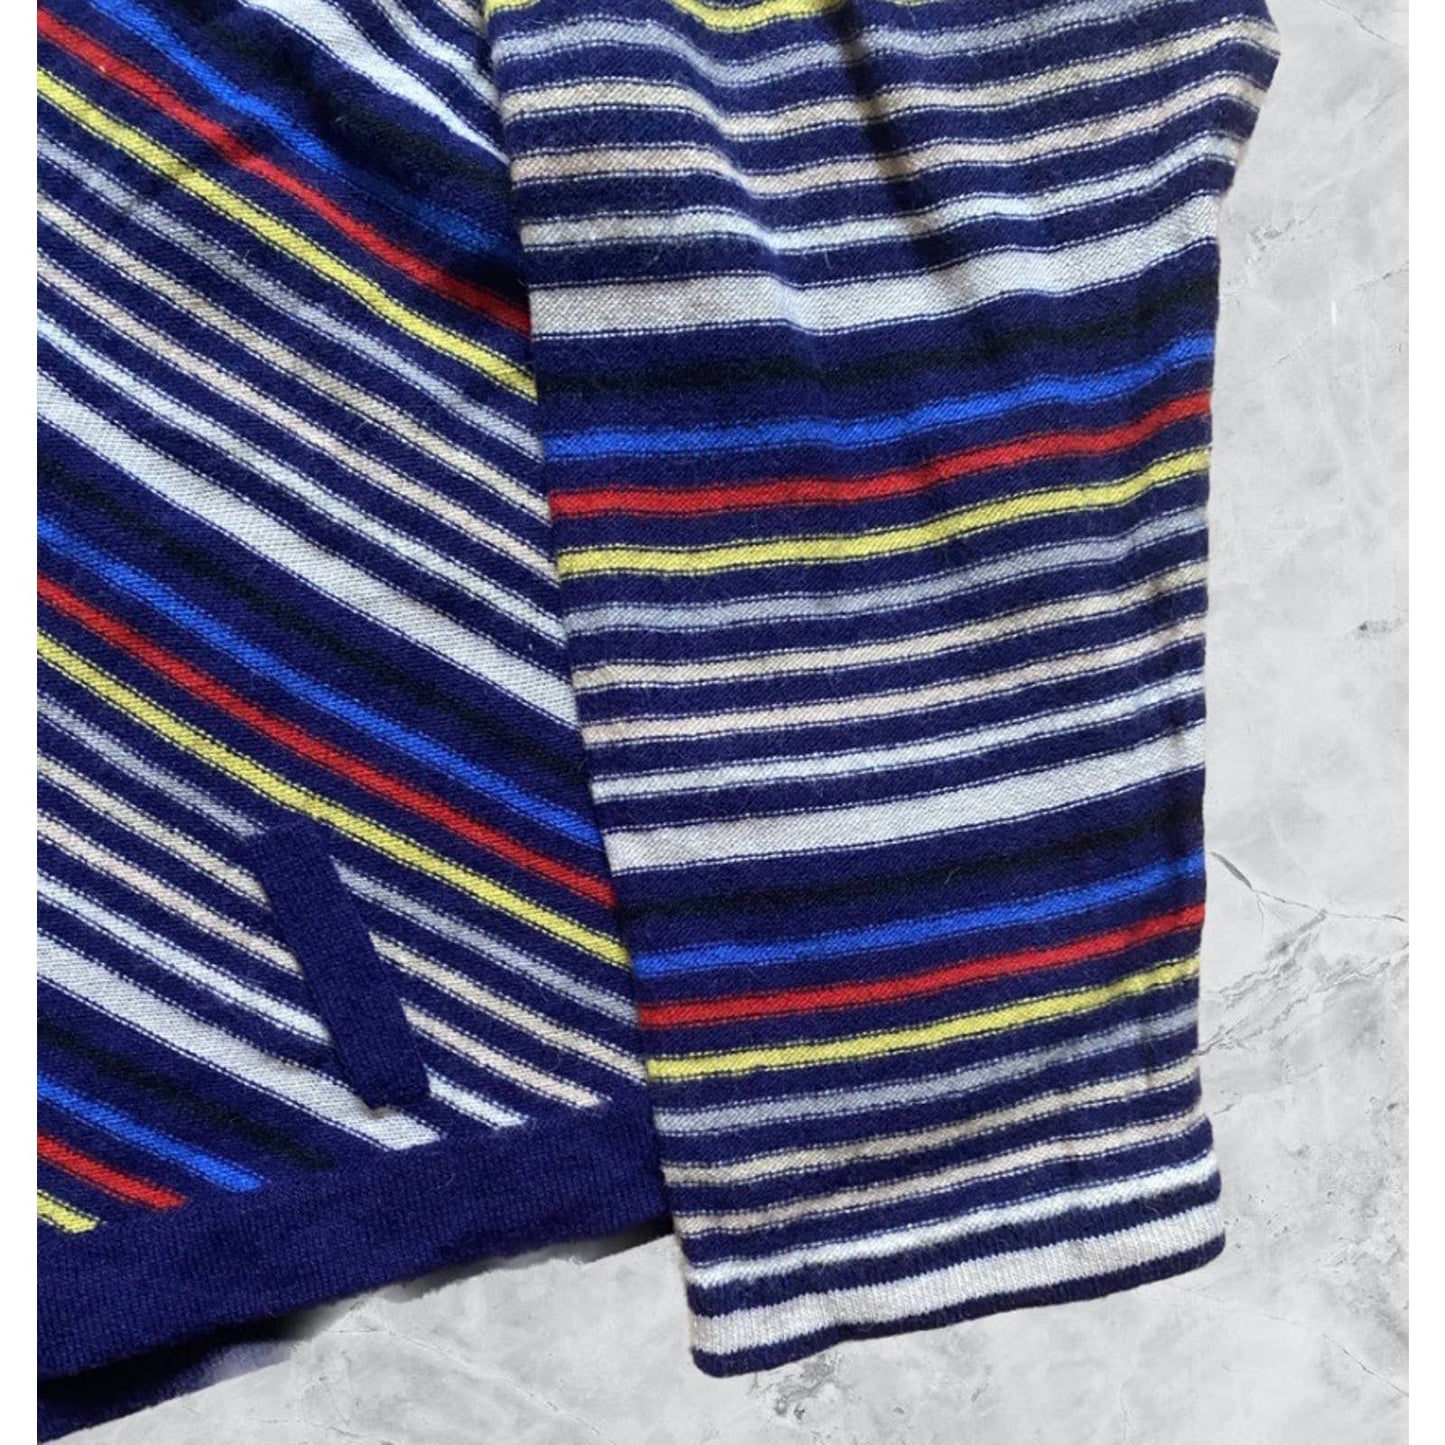 Sonia Rykiel Paris vintage navy sweater striped multicolor